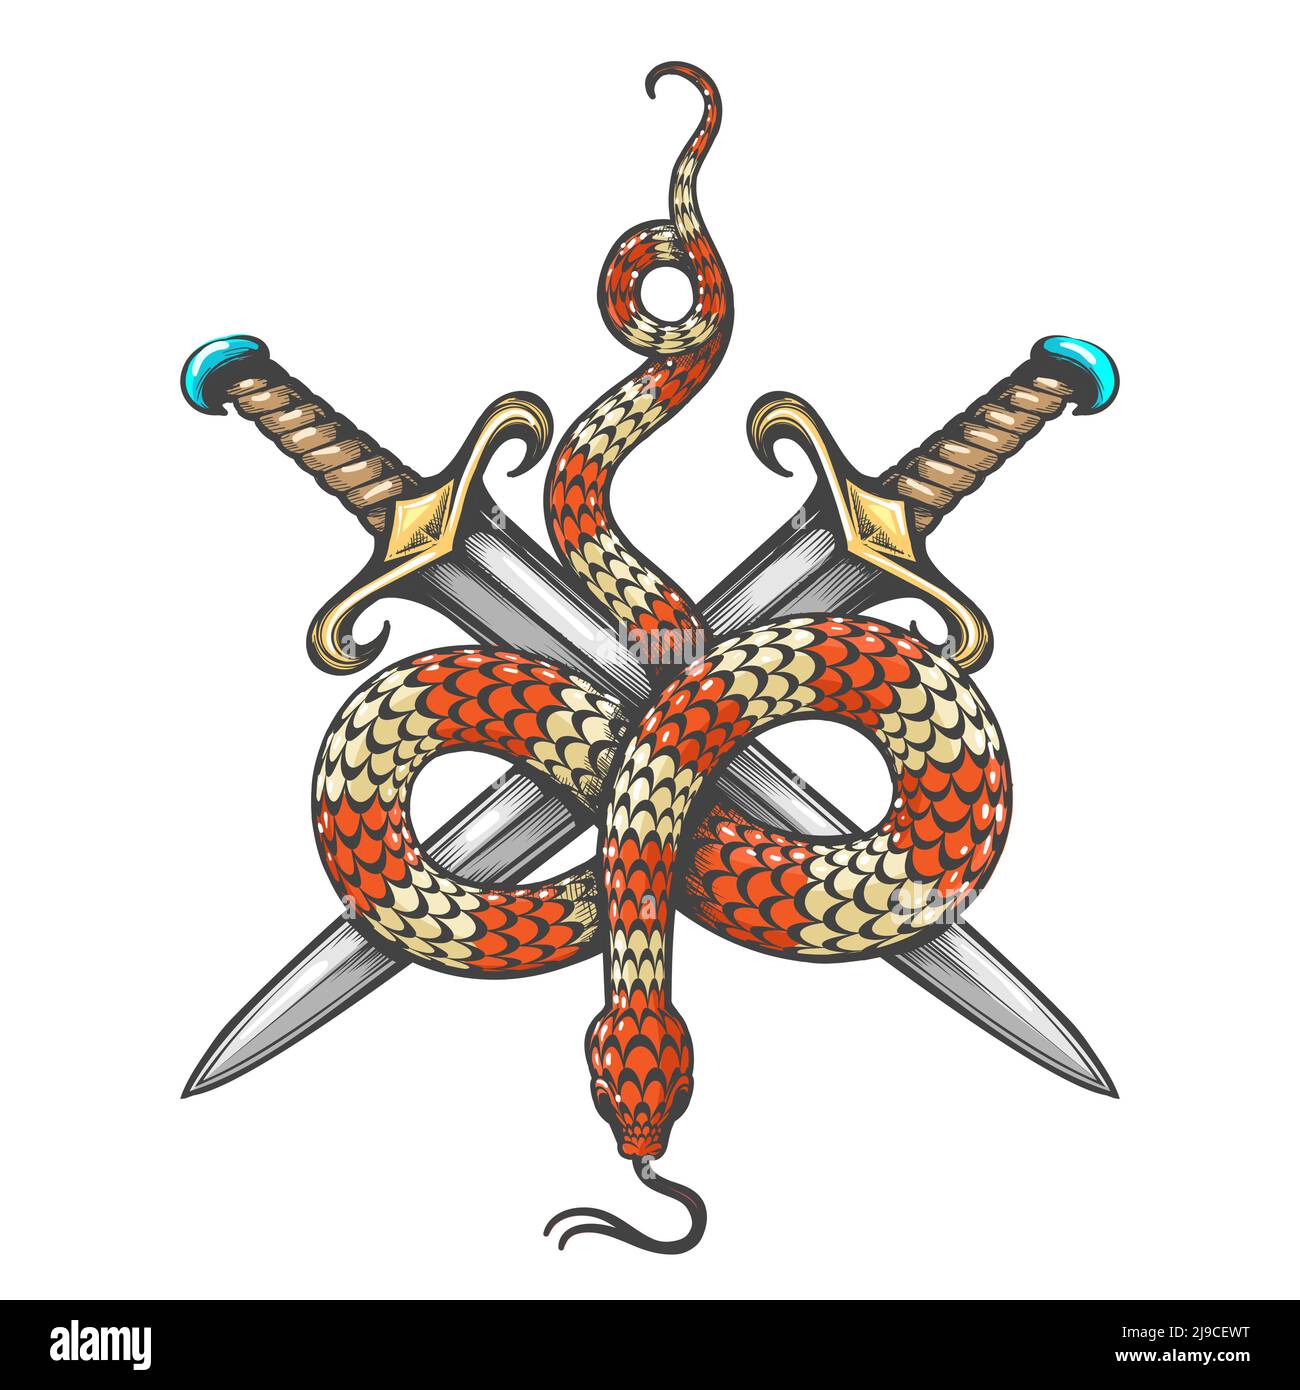 Tatouage de serpent et deux épées dessinées en style gravure isolée sur fond blanc. Illustration vectorielle. Illustration de Vecteur